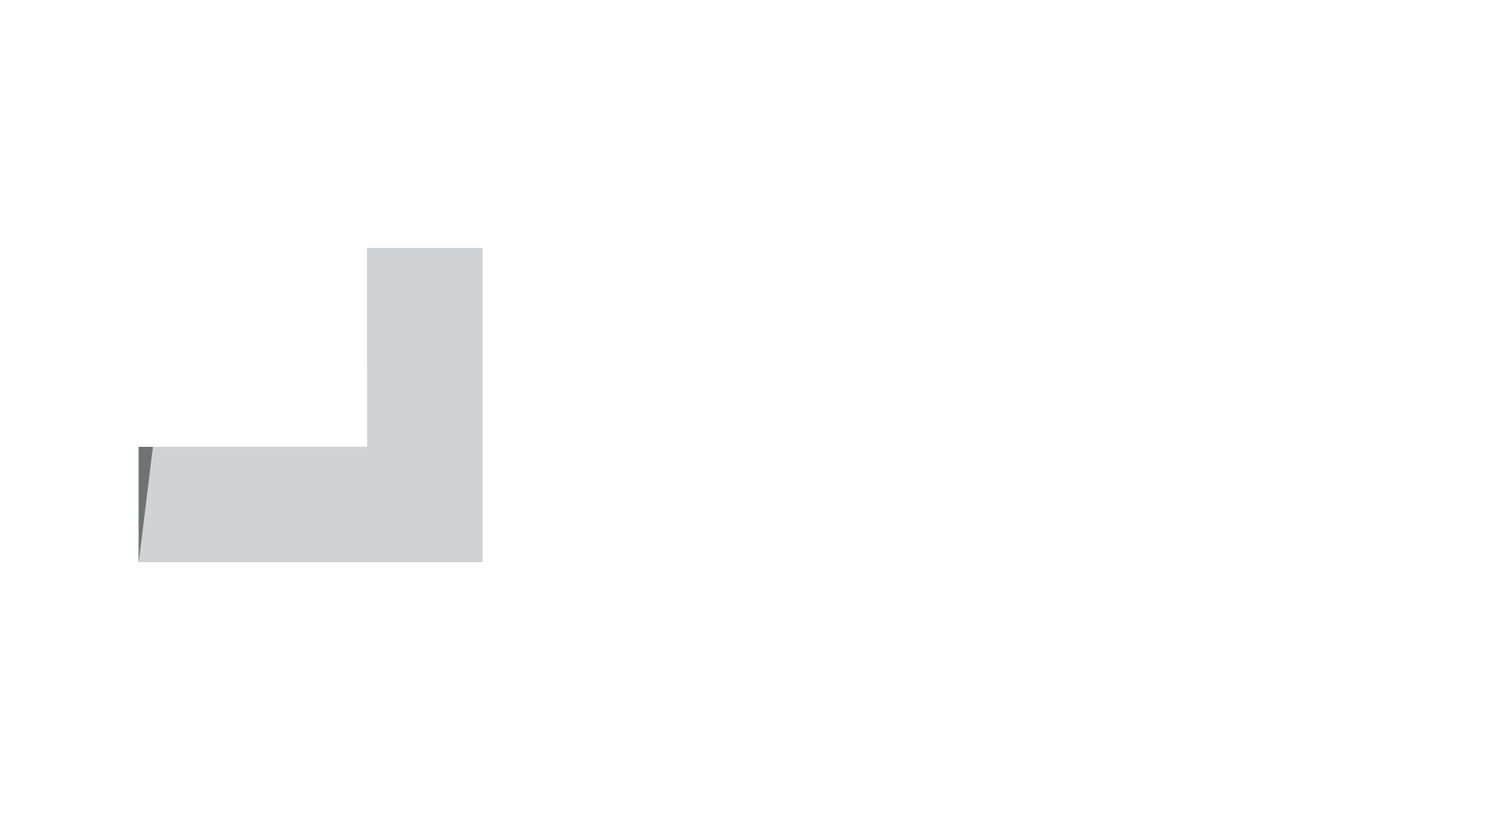 Big Brick Productions